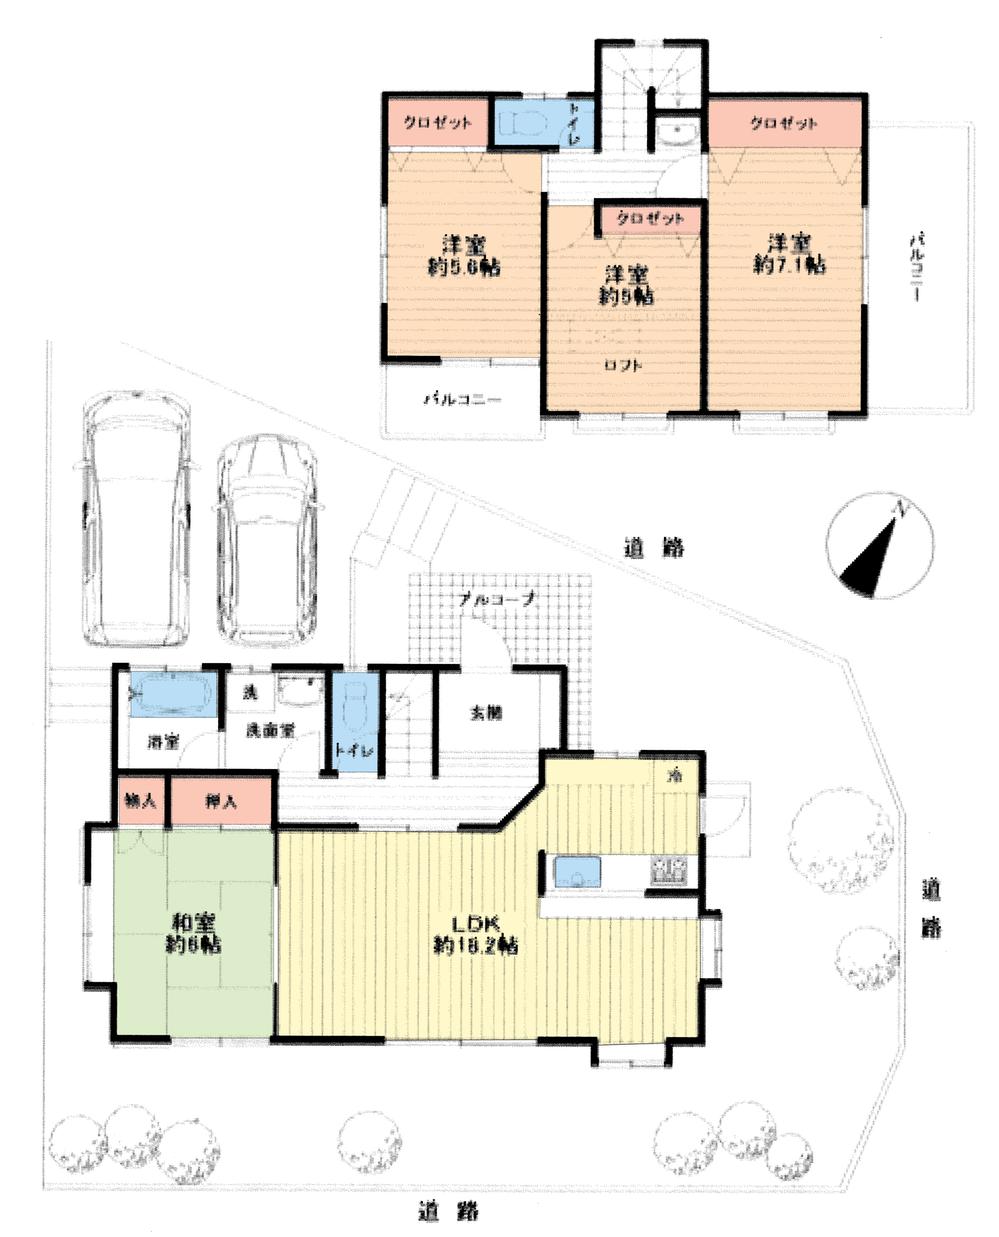 Floor plan. 17,900,000 yen, 4LDK, Land area 175.44 sq m , Building area 104.53 sq m floor plan